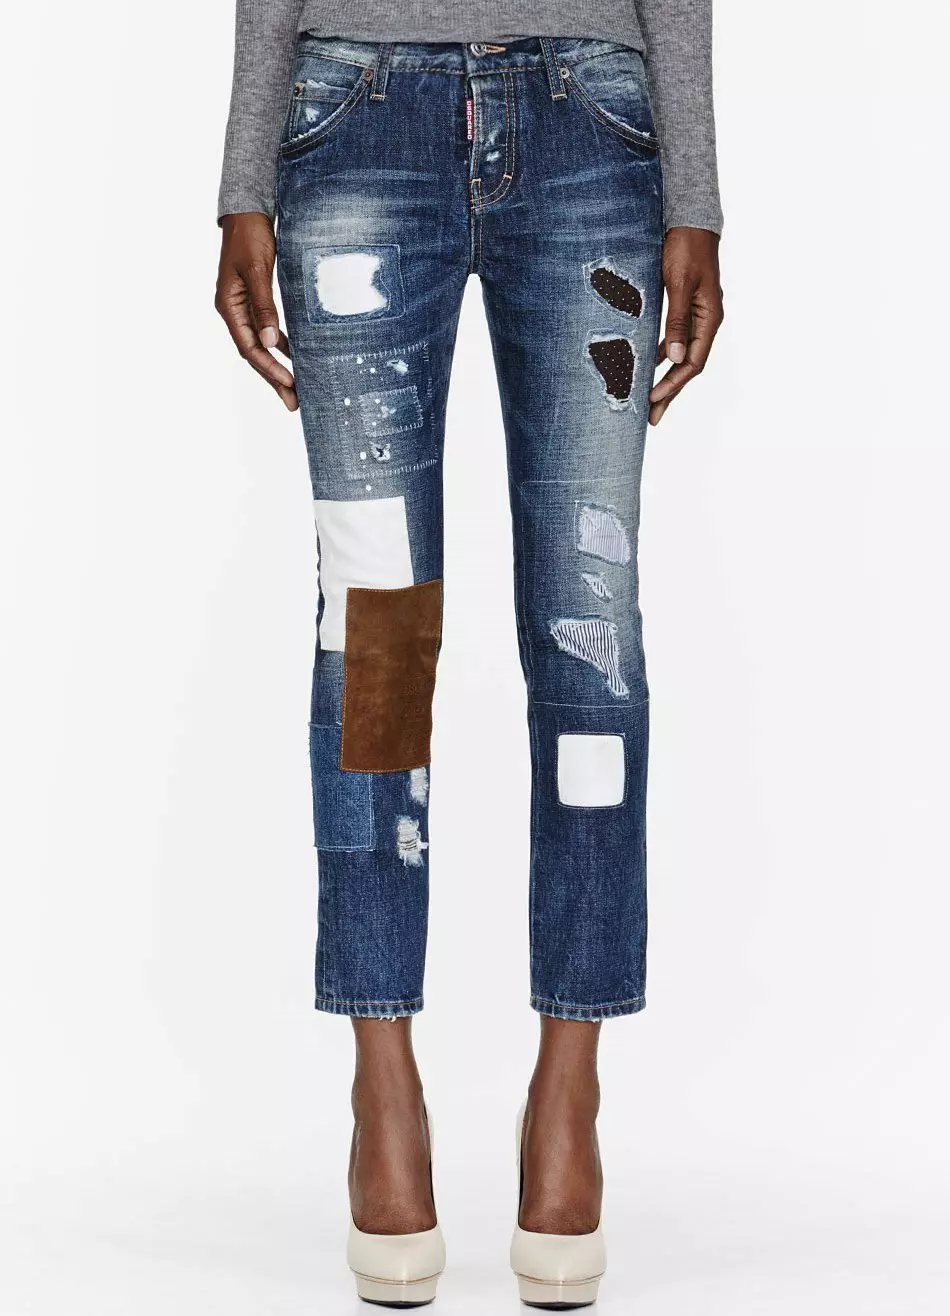 Americké džíny: Dámské značkové džíny z Ameriky, jak odlišit originál 1089_31